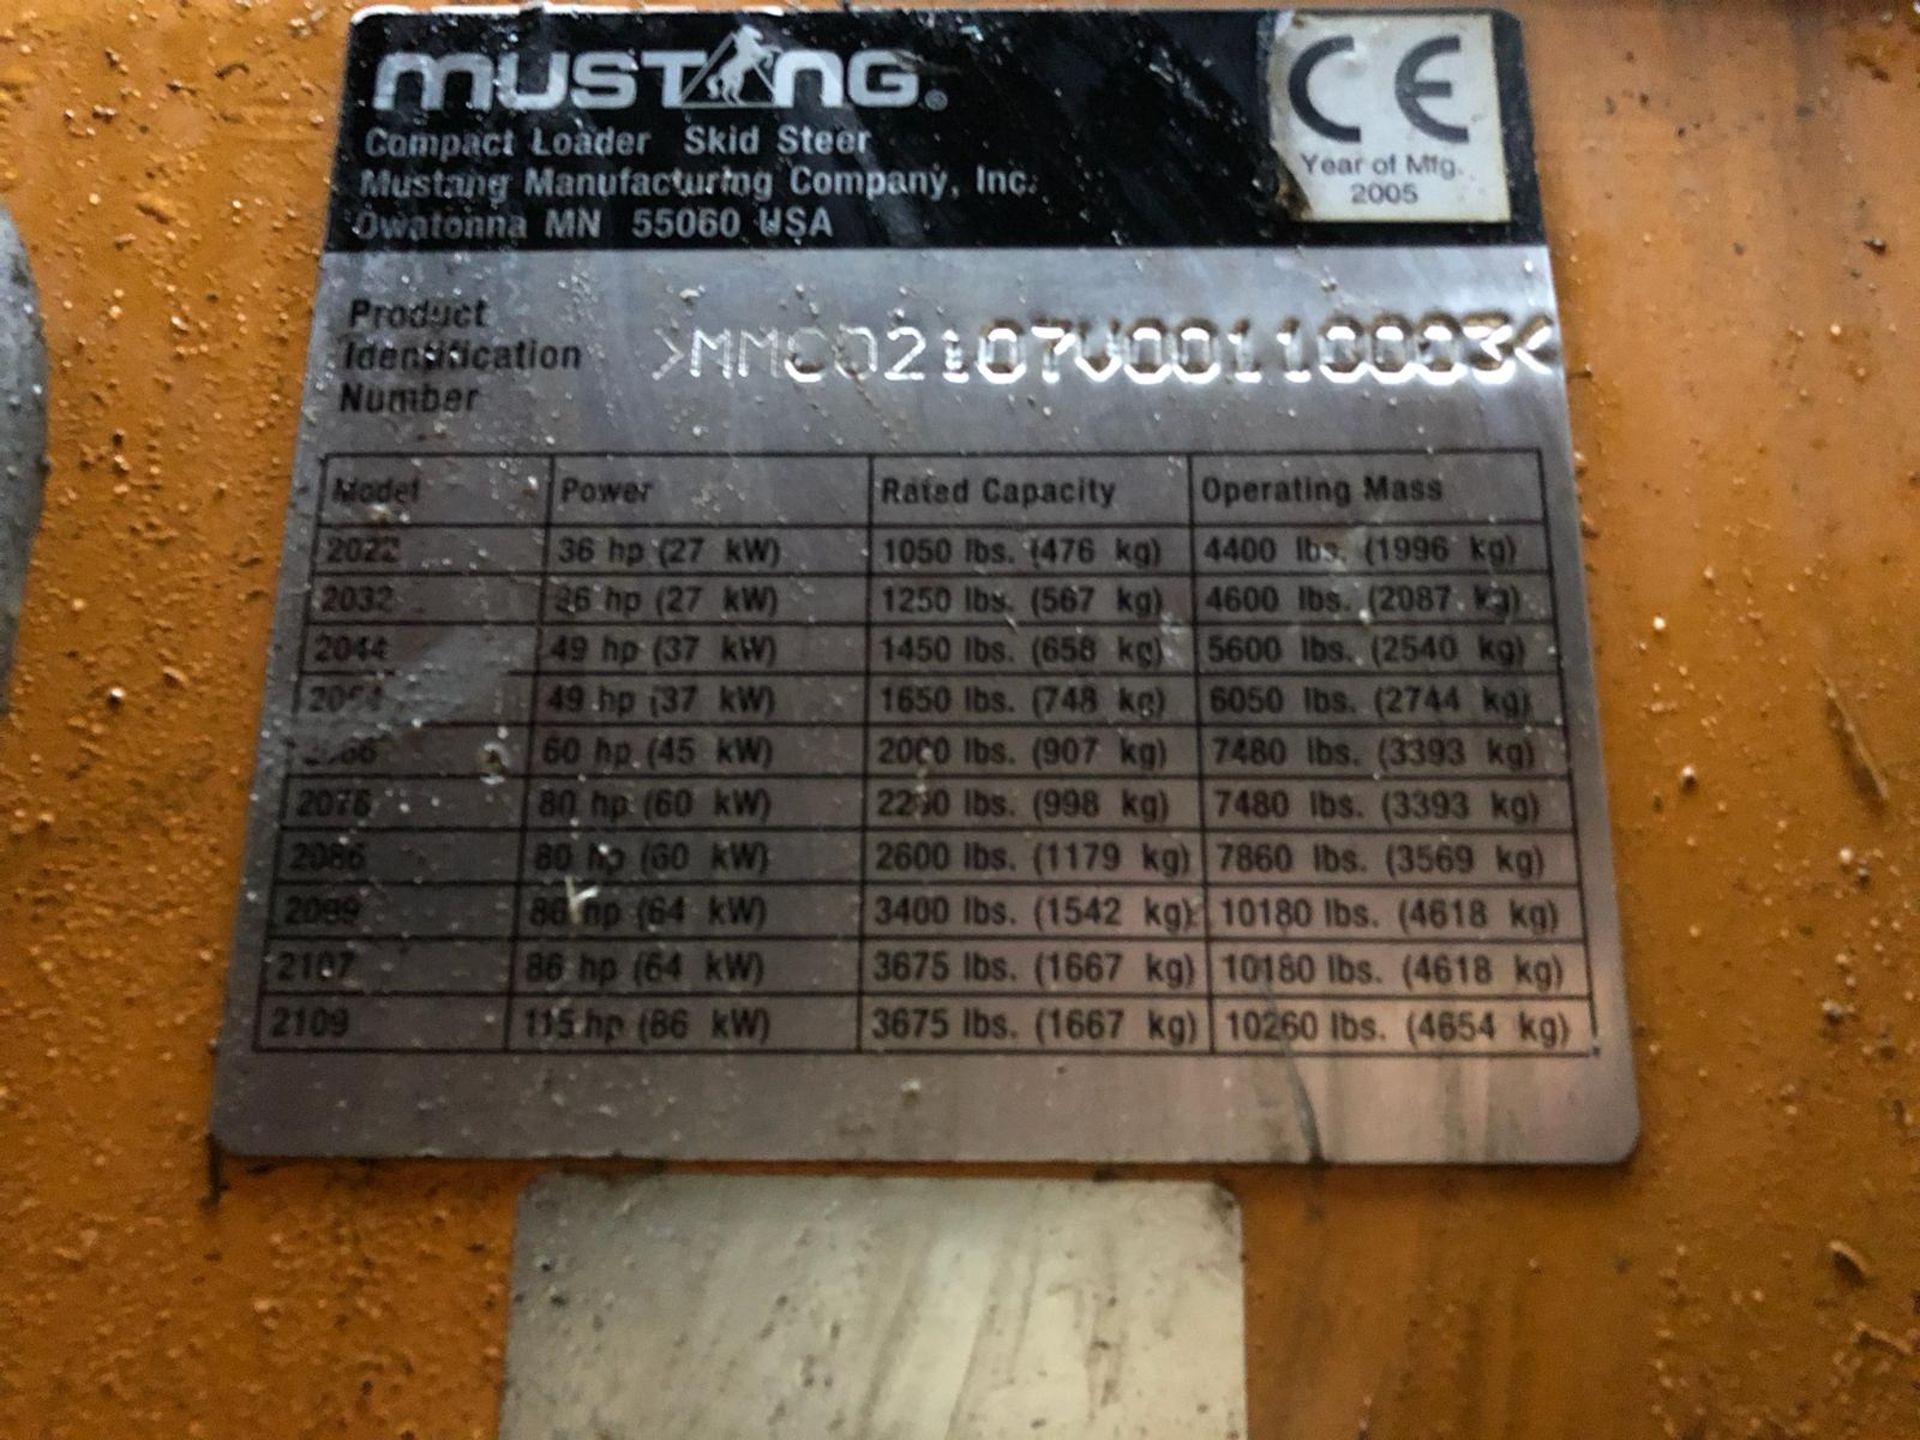 2005 MUSTANG 2107 COMPACT LOADER SKID STEER *PLUS VAT* - Image 8 of 16